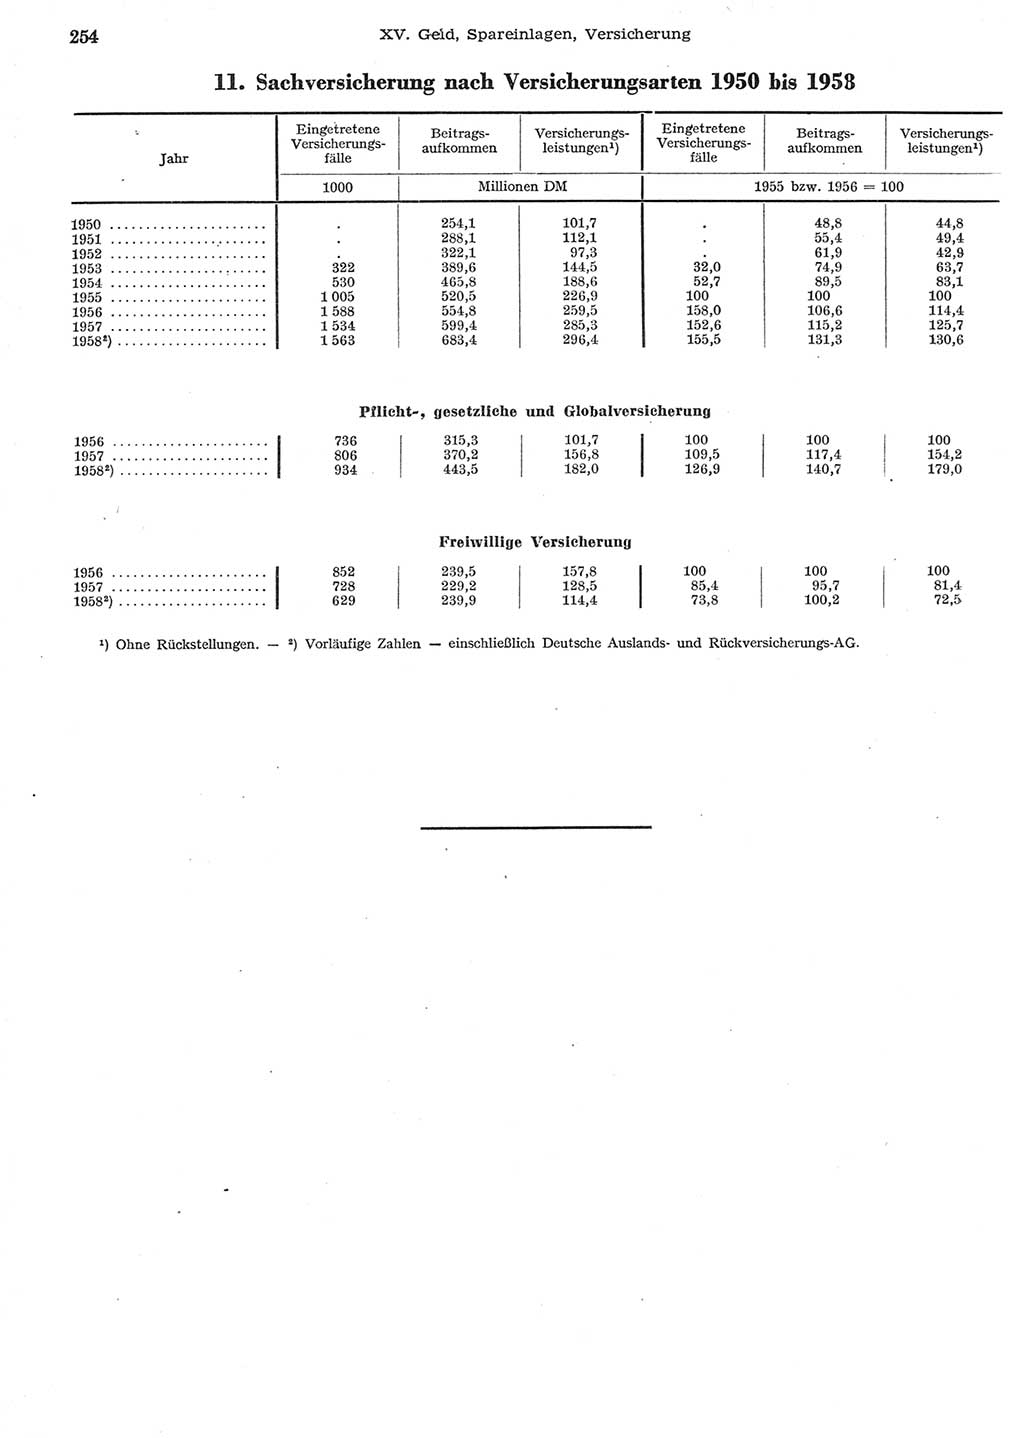 Statistisches Jahrbuch der Deutschen Demokratischen Republik (DDR) 1958, Seite 254 (Stat. Jb. DDR 1958, S. 254)